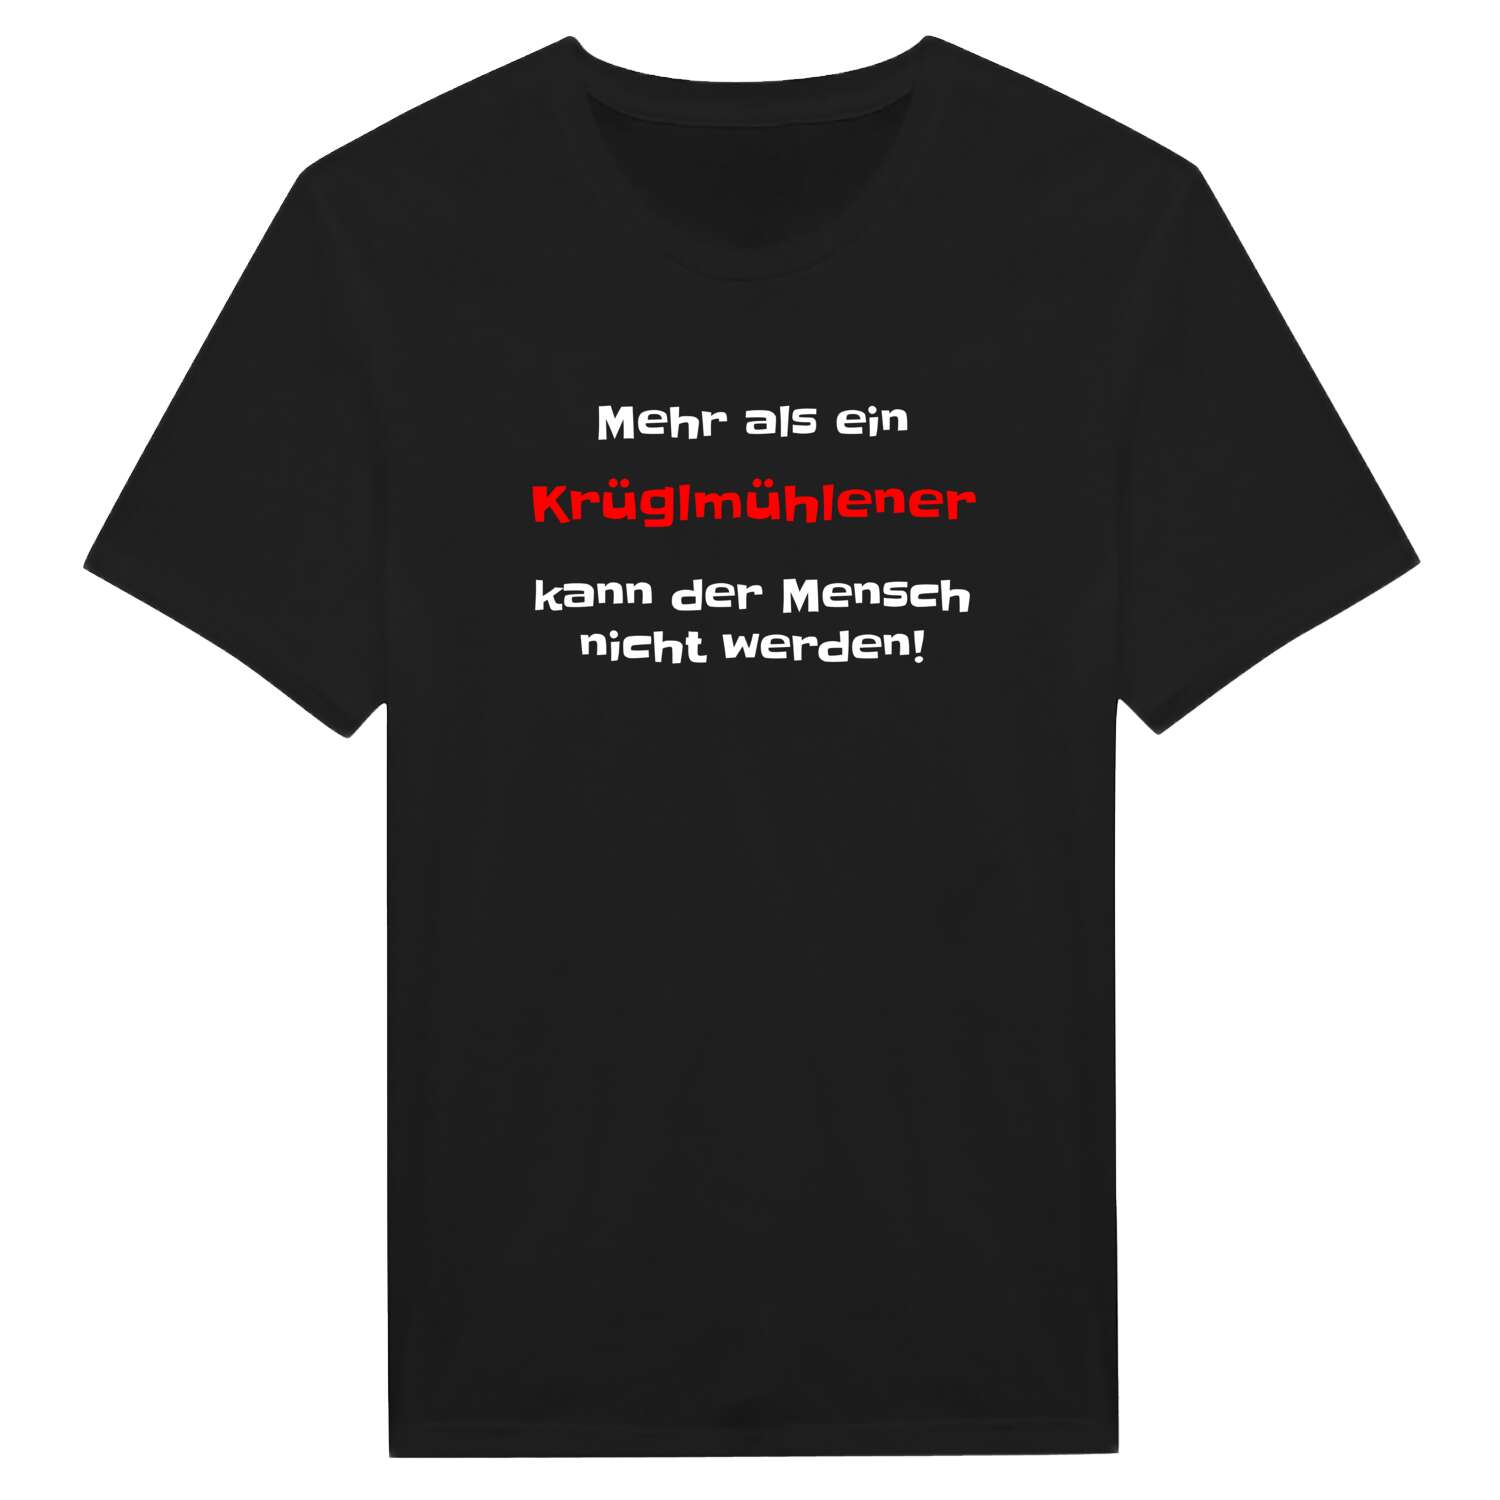 Krüglmühle T-Shirt »Mehr als ein«